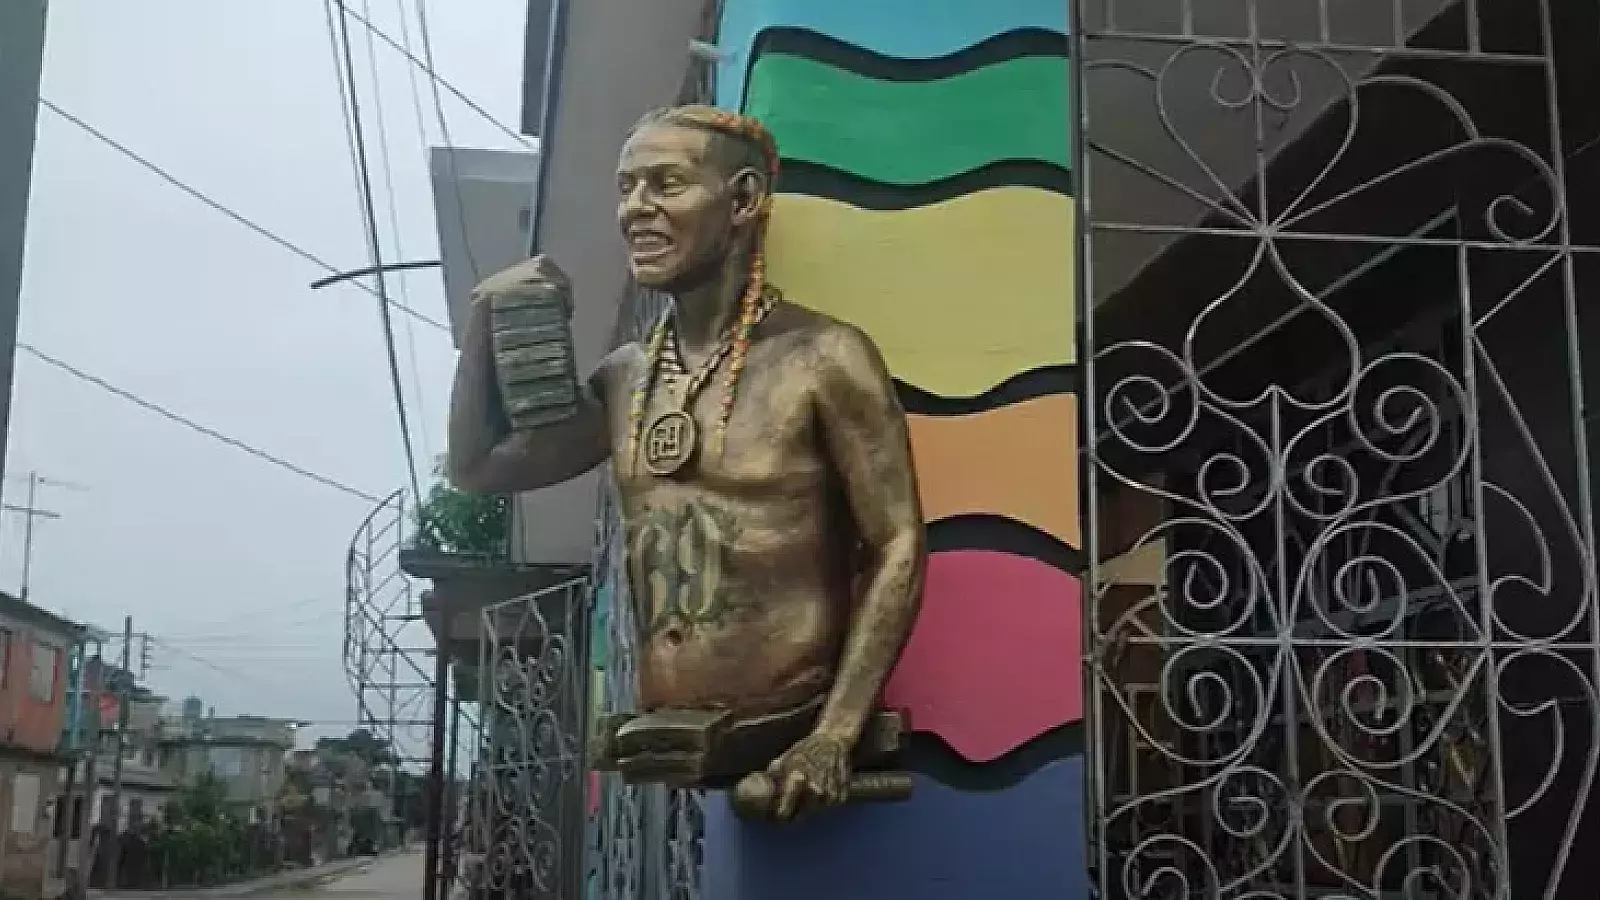 Quitan escultura de Tekashi 6ix9ine en Cuba: ¿qué pasó?